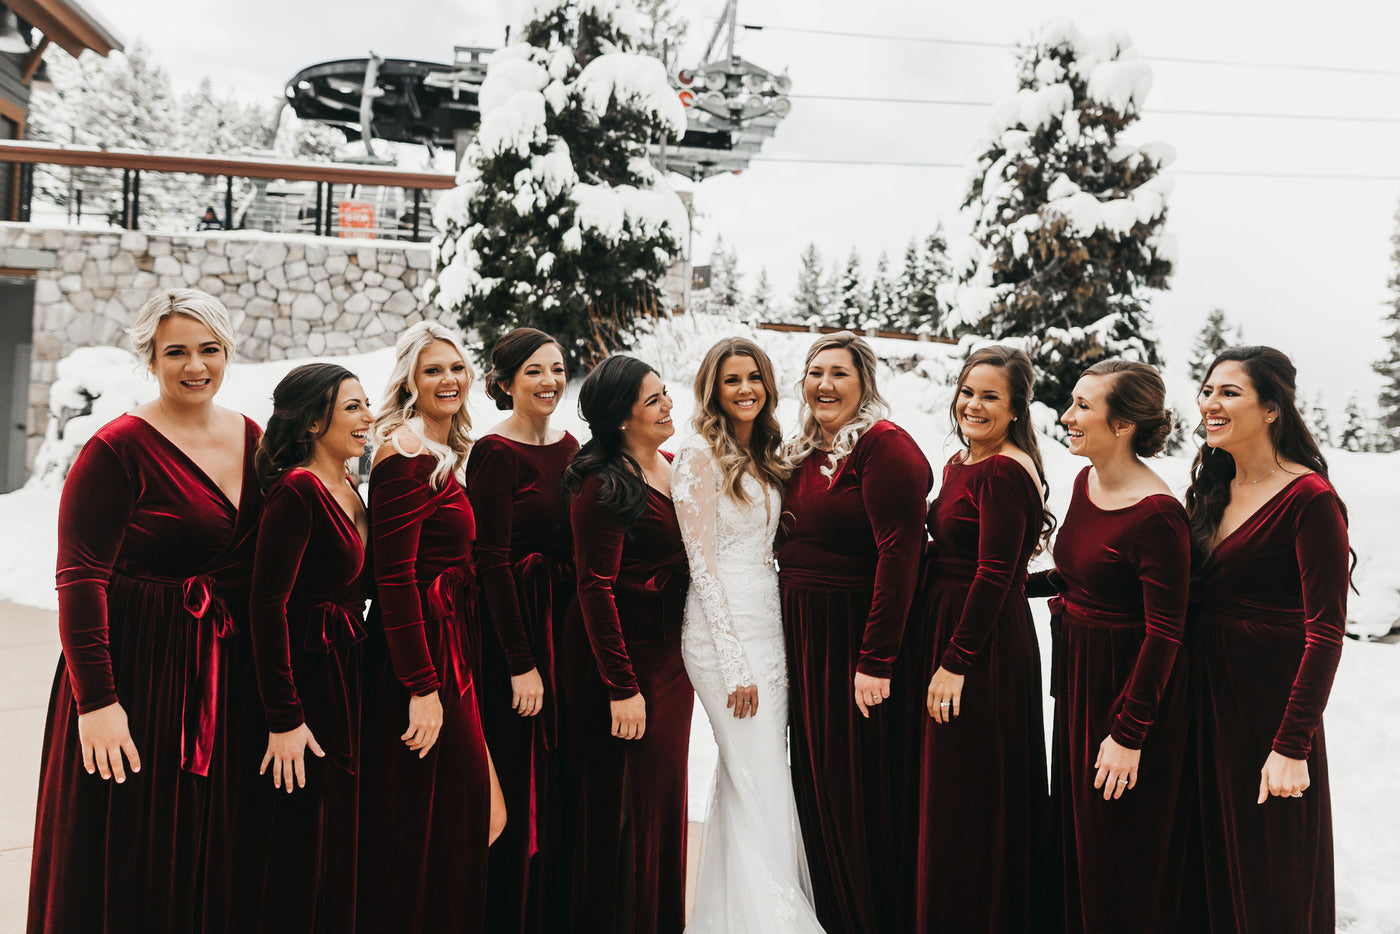 Velvet Bridesmaid Dresses For Fall Winter Wedding